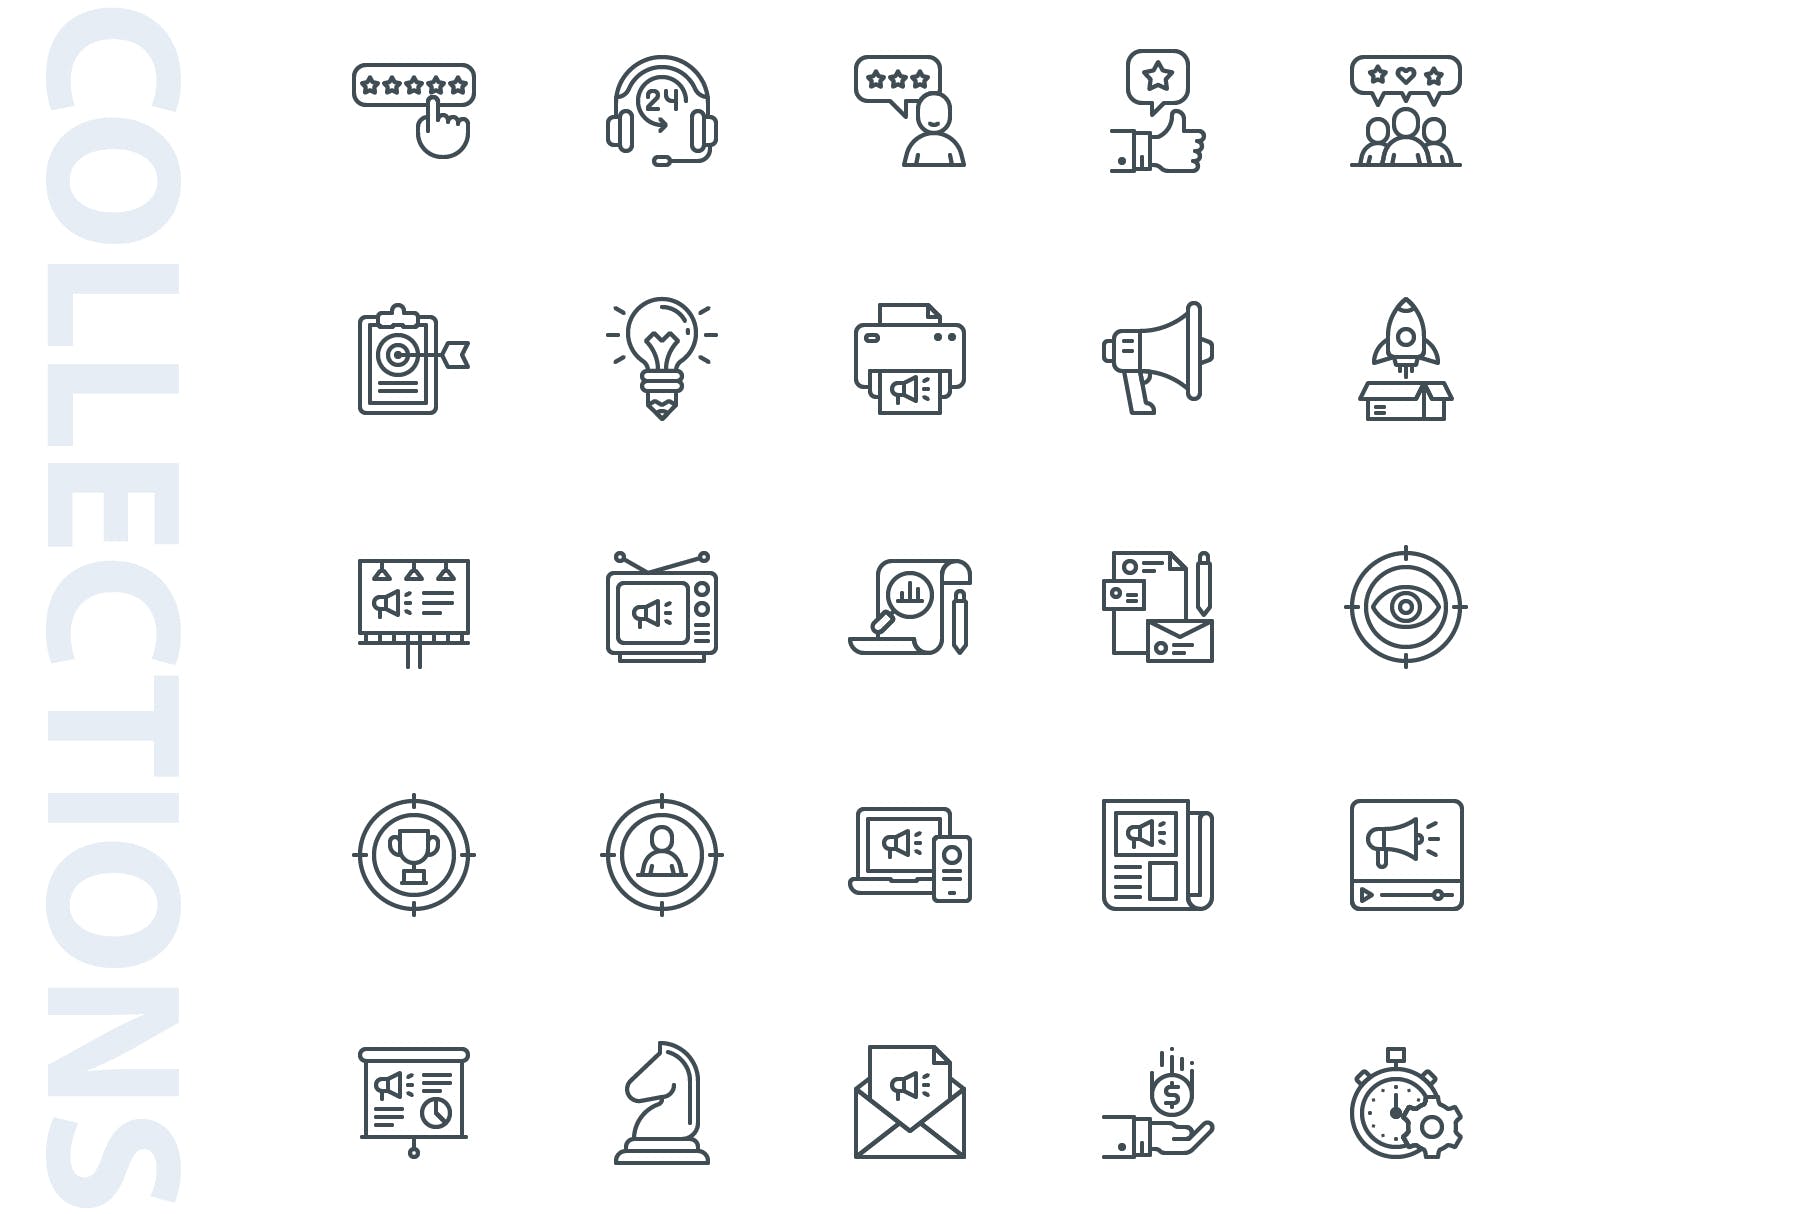 25枚市场营销主题矢量线性蚂蚁素材精选图标 Marketing Lineart Icons插图(3)